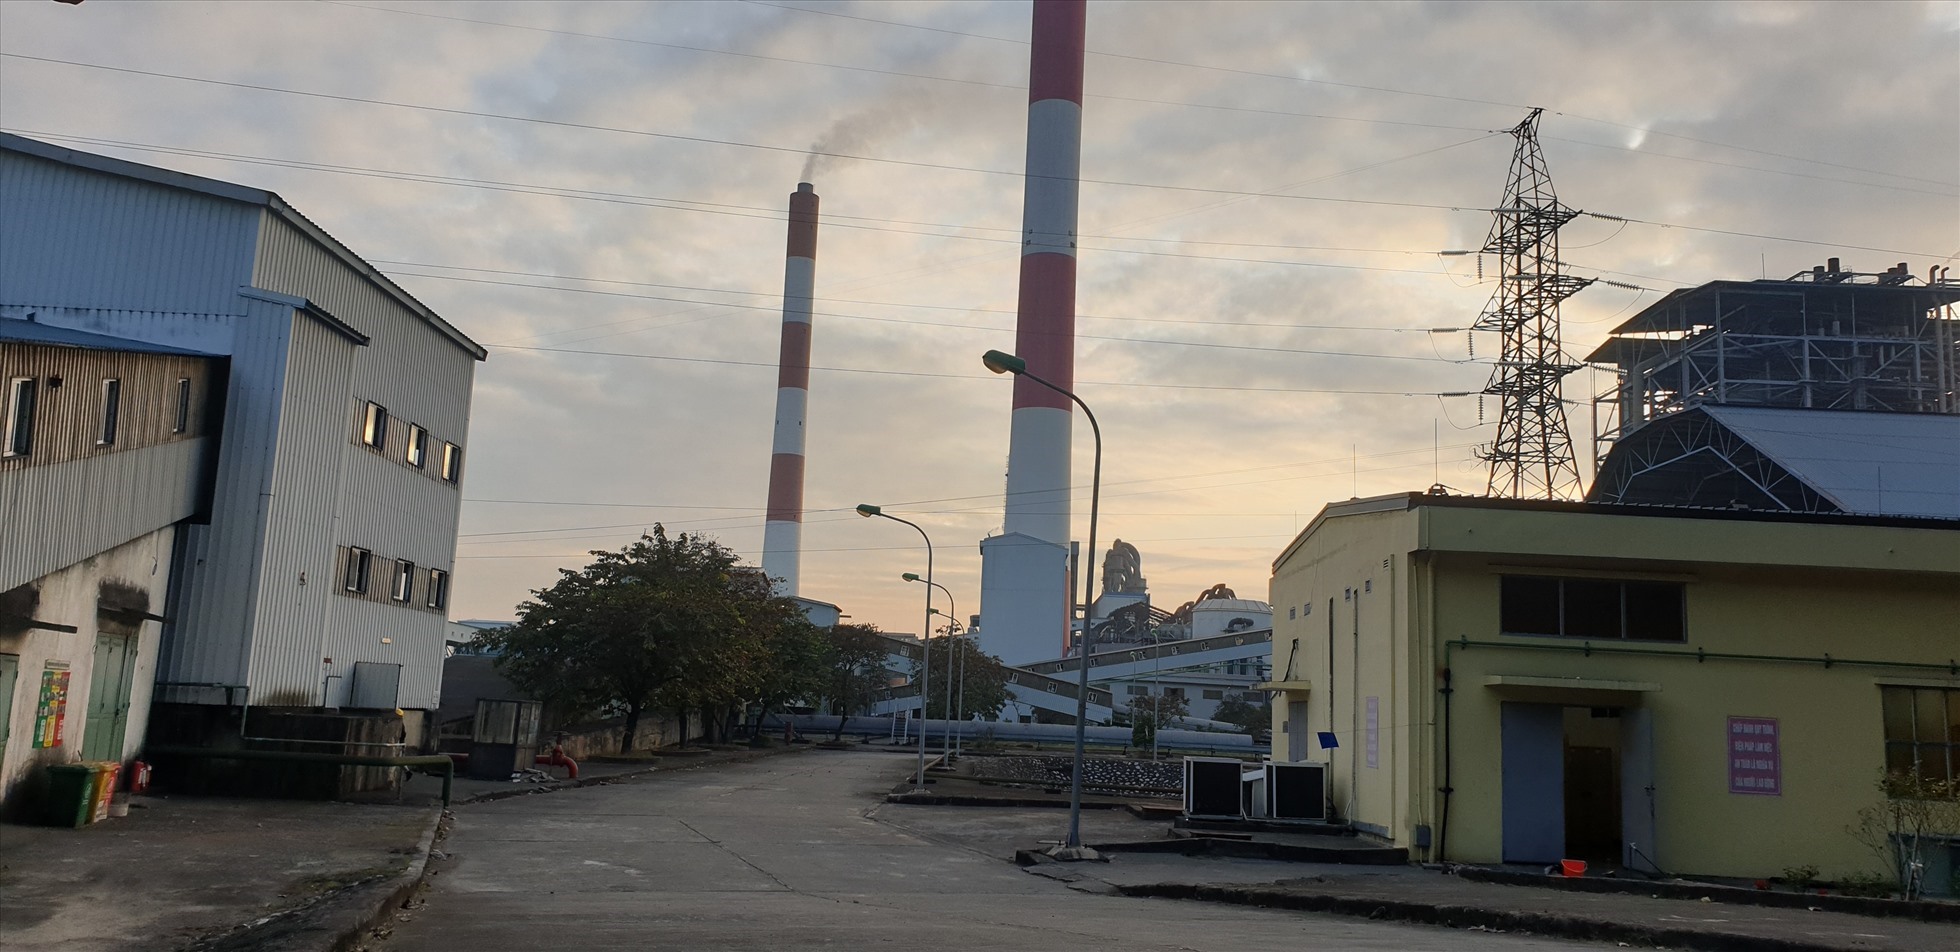 Nhà máy nhiệt điện Uông Bí, TP.Uông Bí, tỉnh Quảng Ninh. Ảnh: Nguyễn Hùng